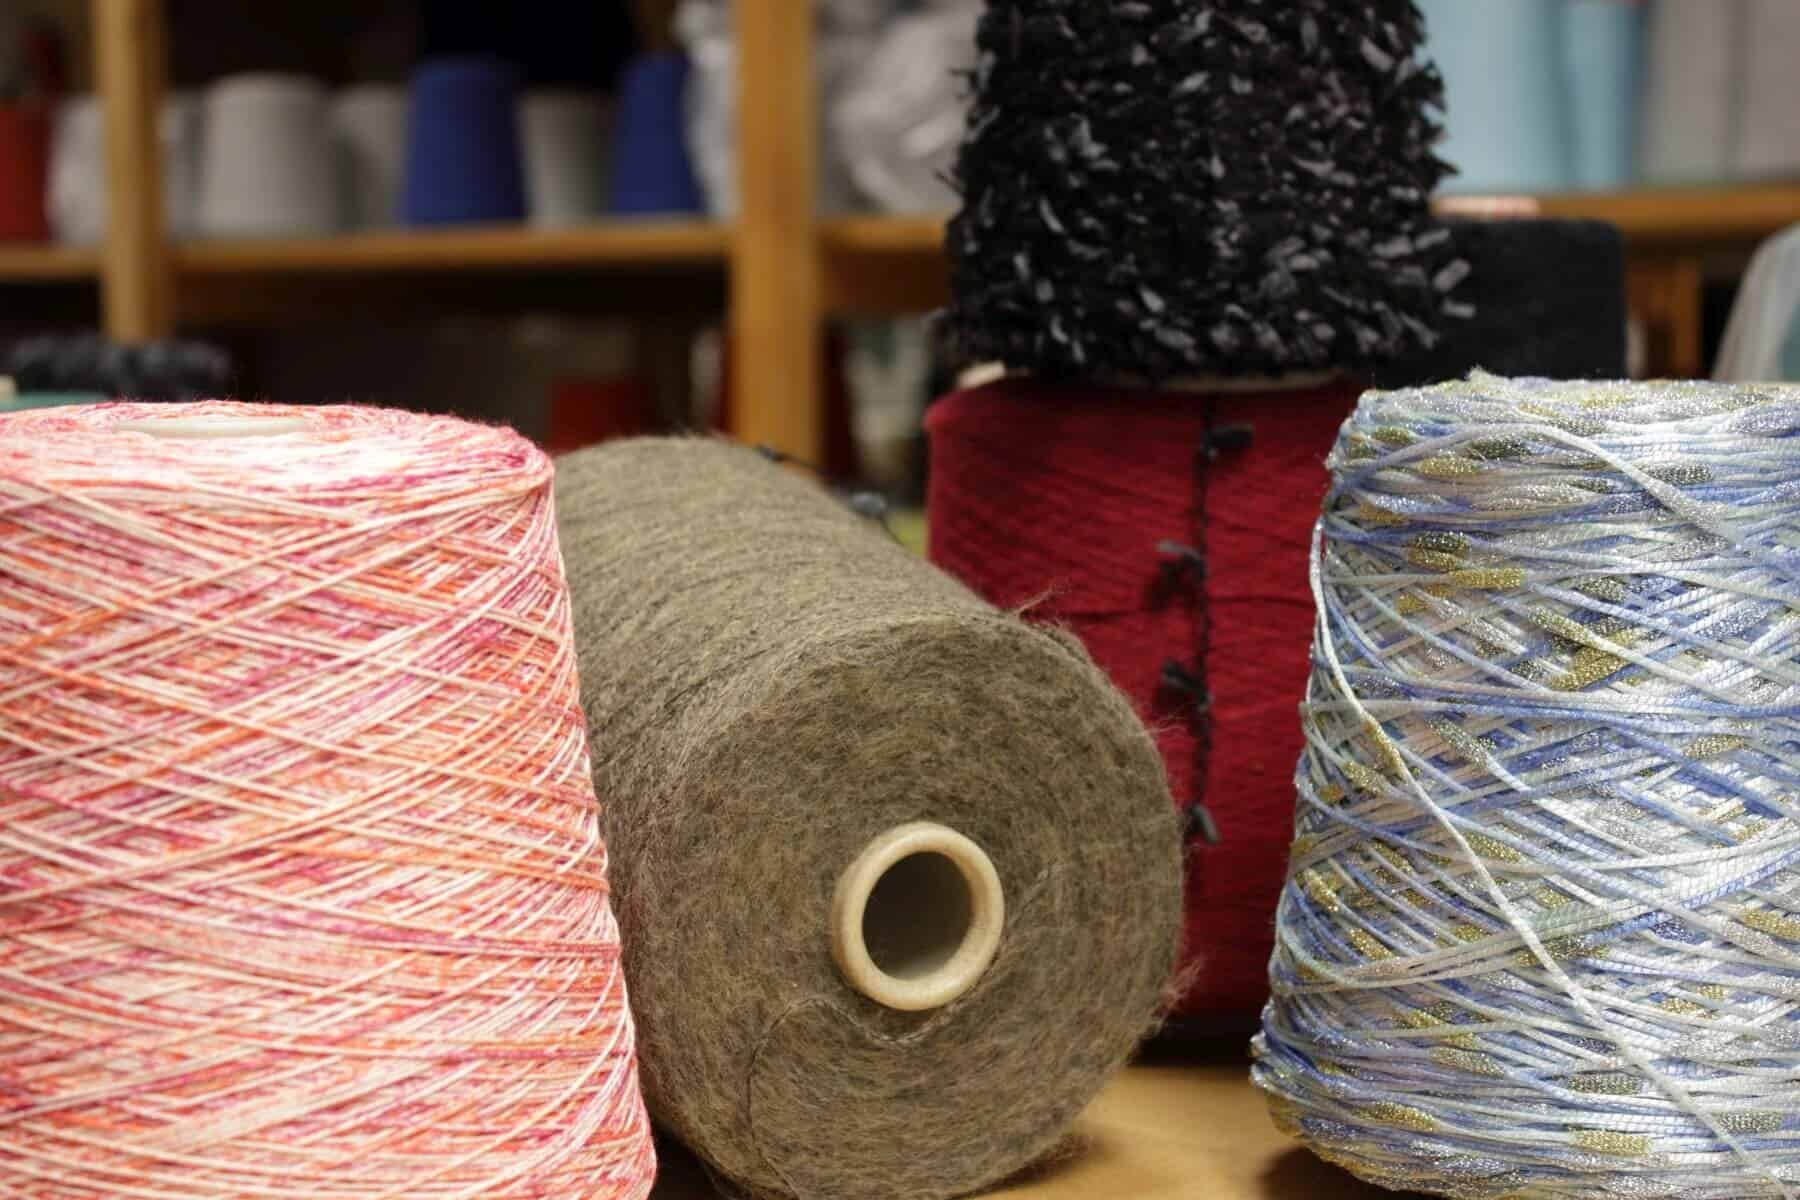 Konengarn - machine knitting yarn on paper cone